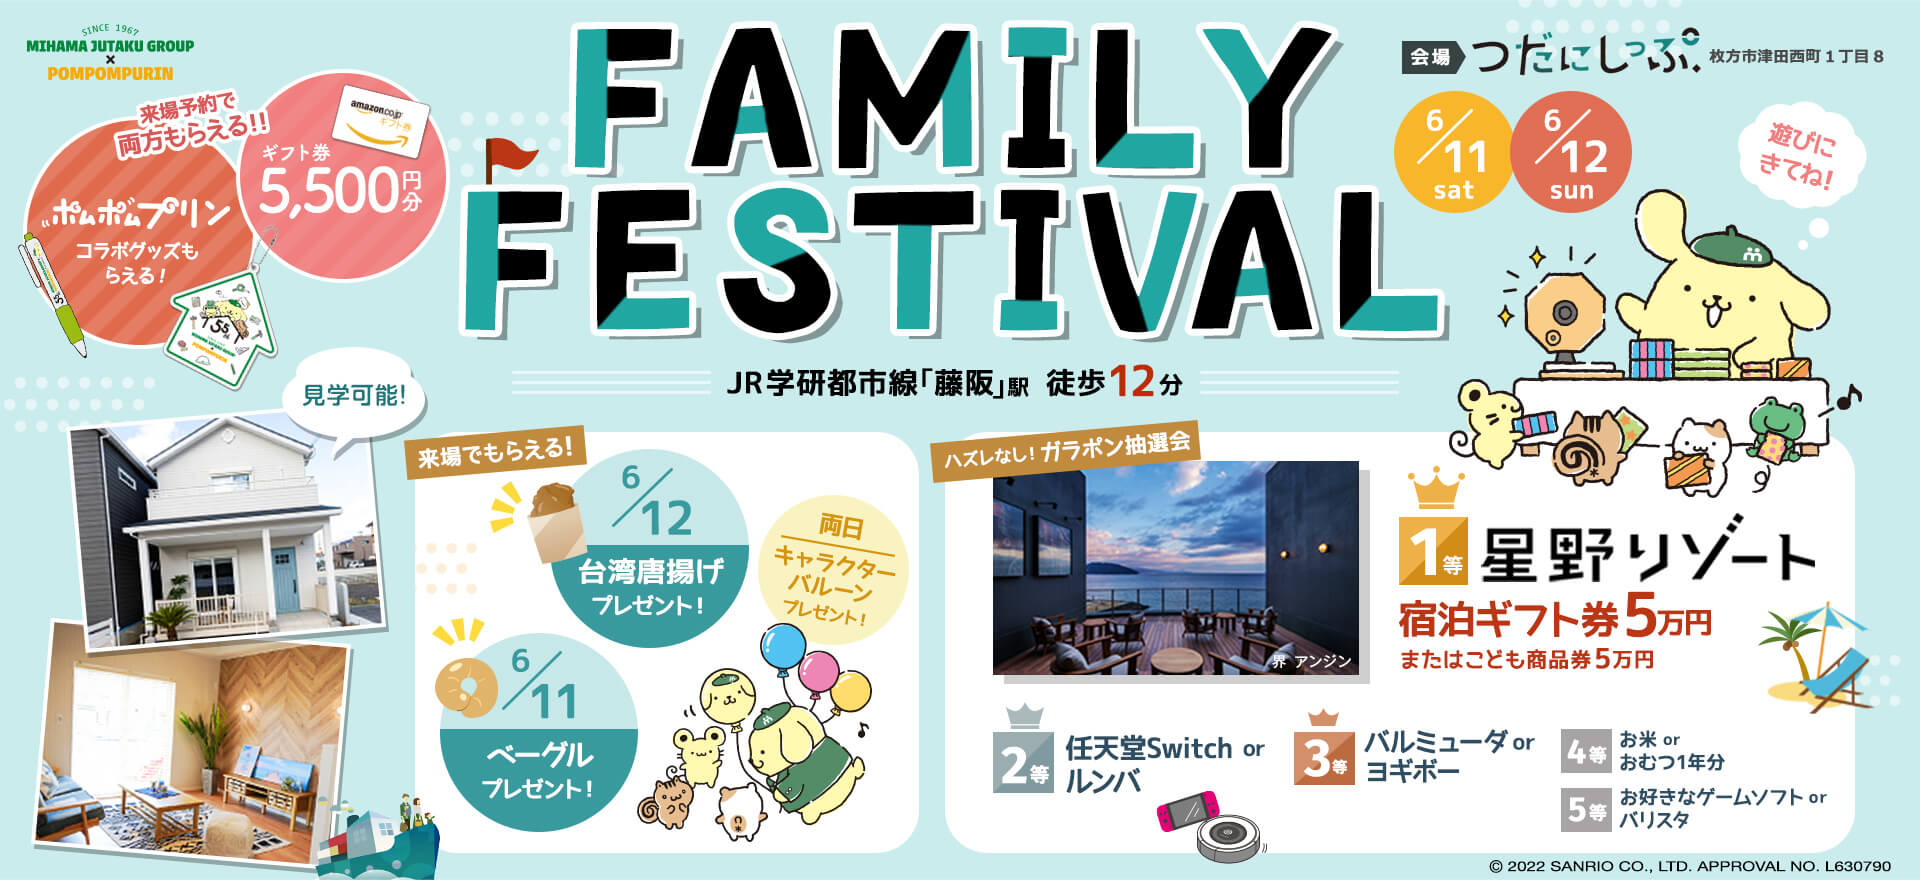 FAMILY FESTIVAL 6/11(土)6/12(日)